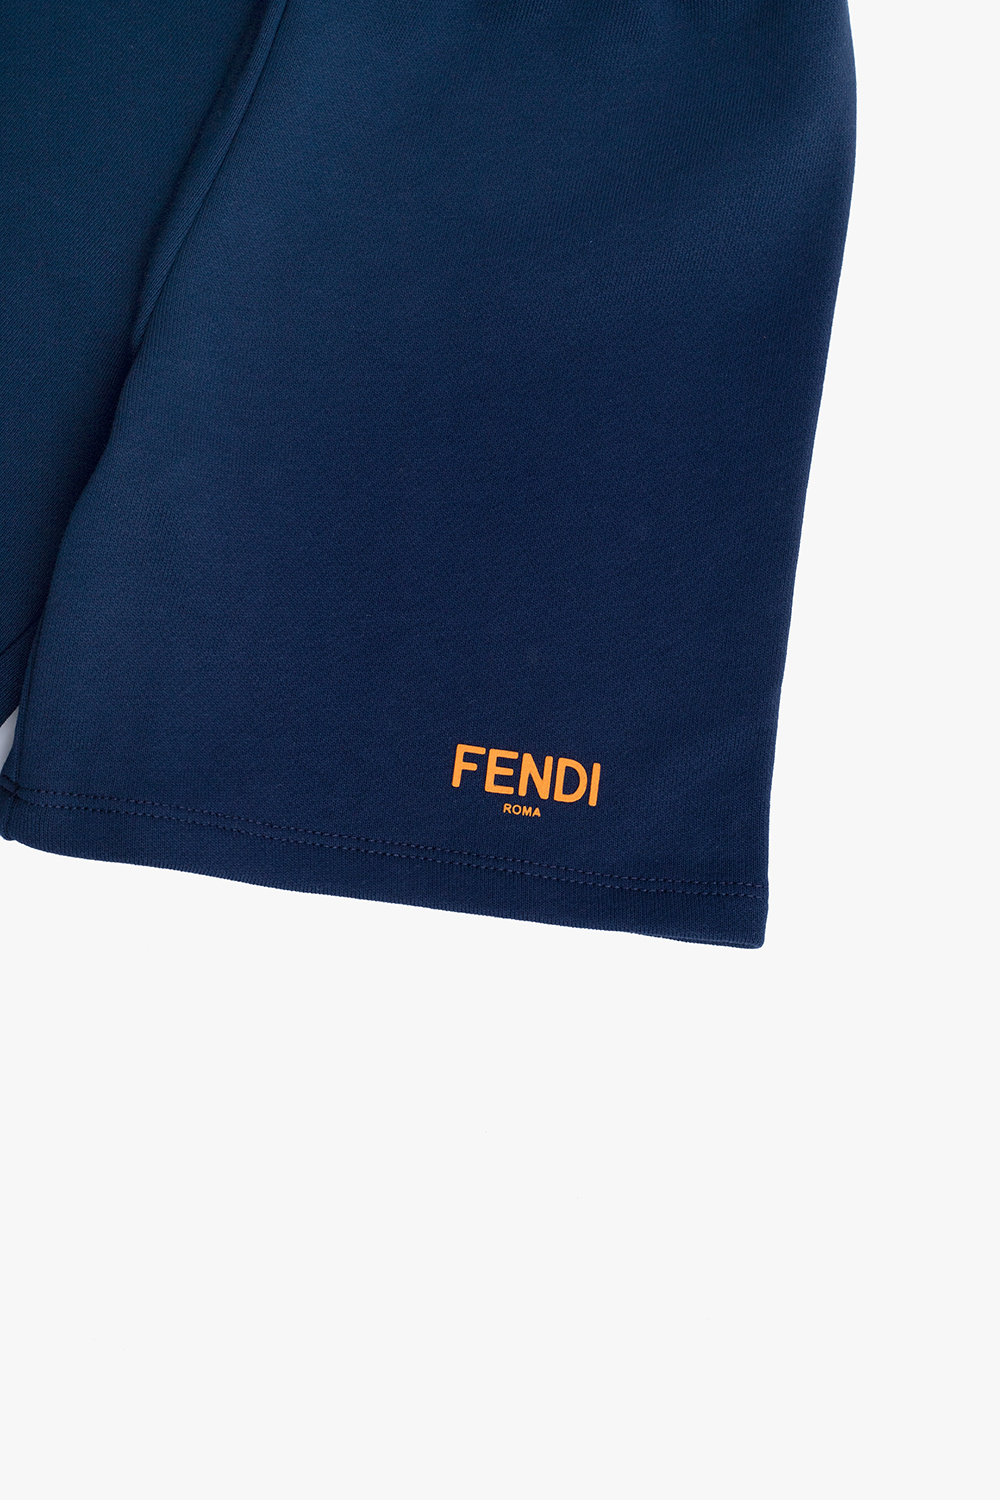 Fendi Kids fendi kids logo stamp sleeping bag item